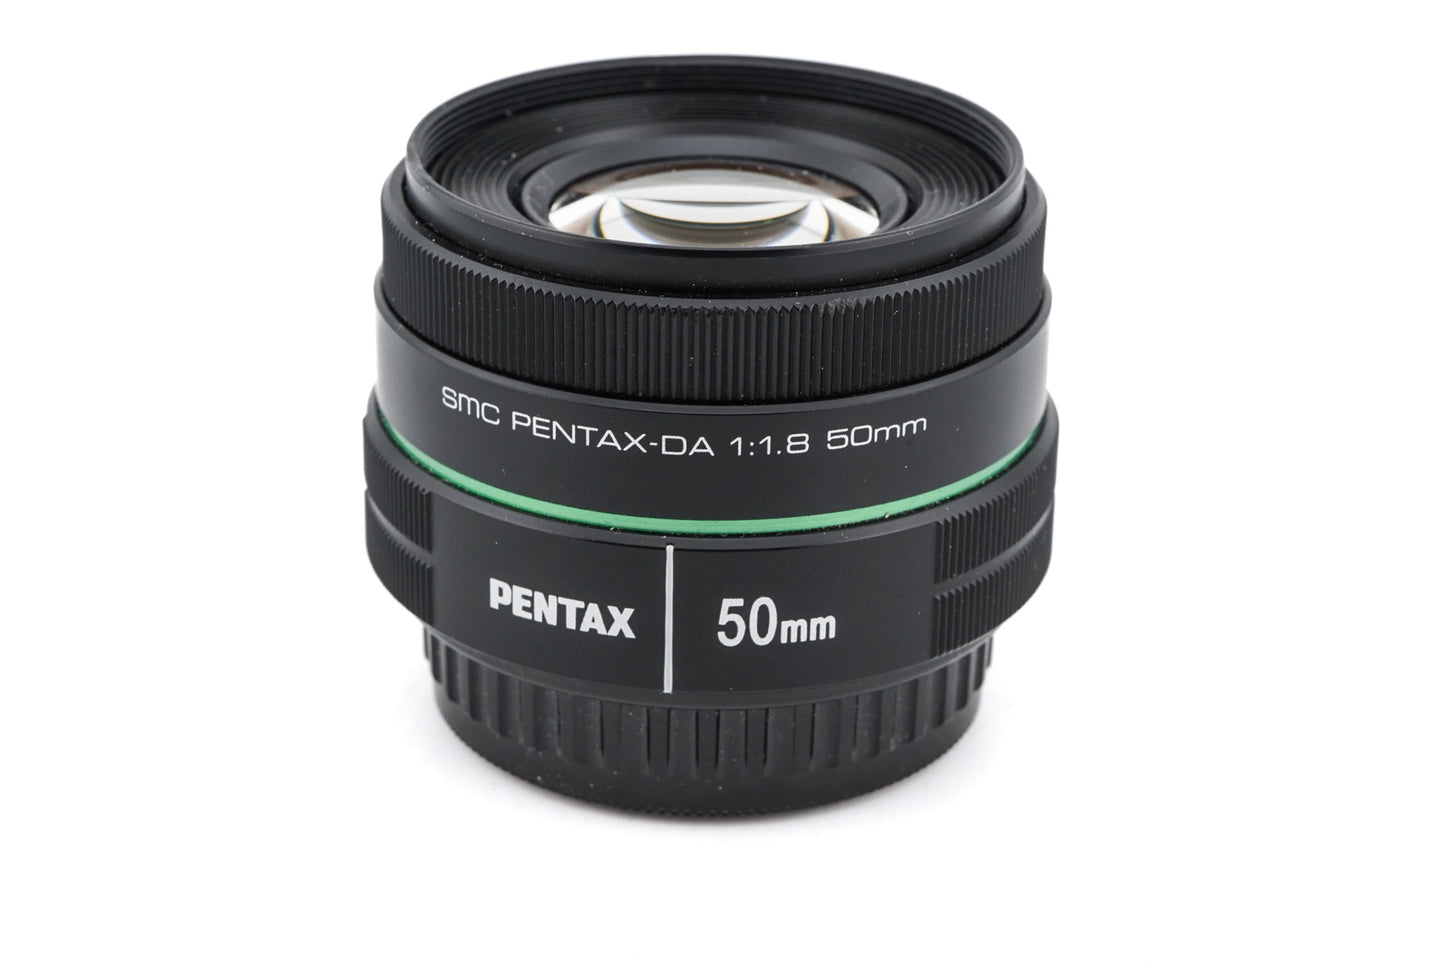 Pentax 50mm f1.8 SMC Pentax-DA